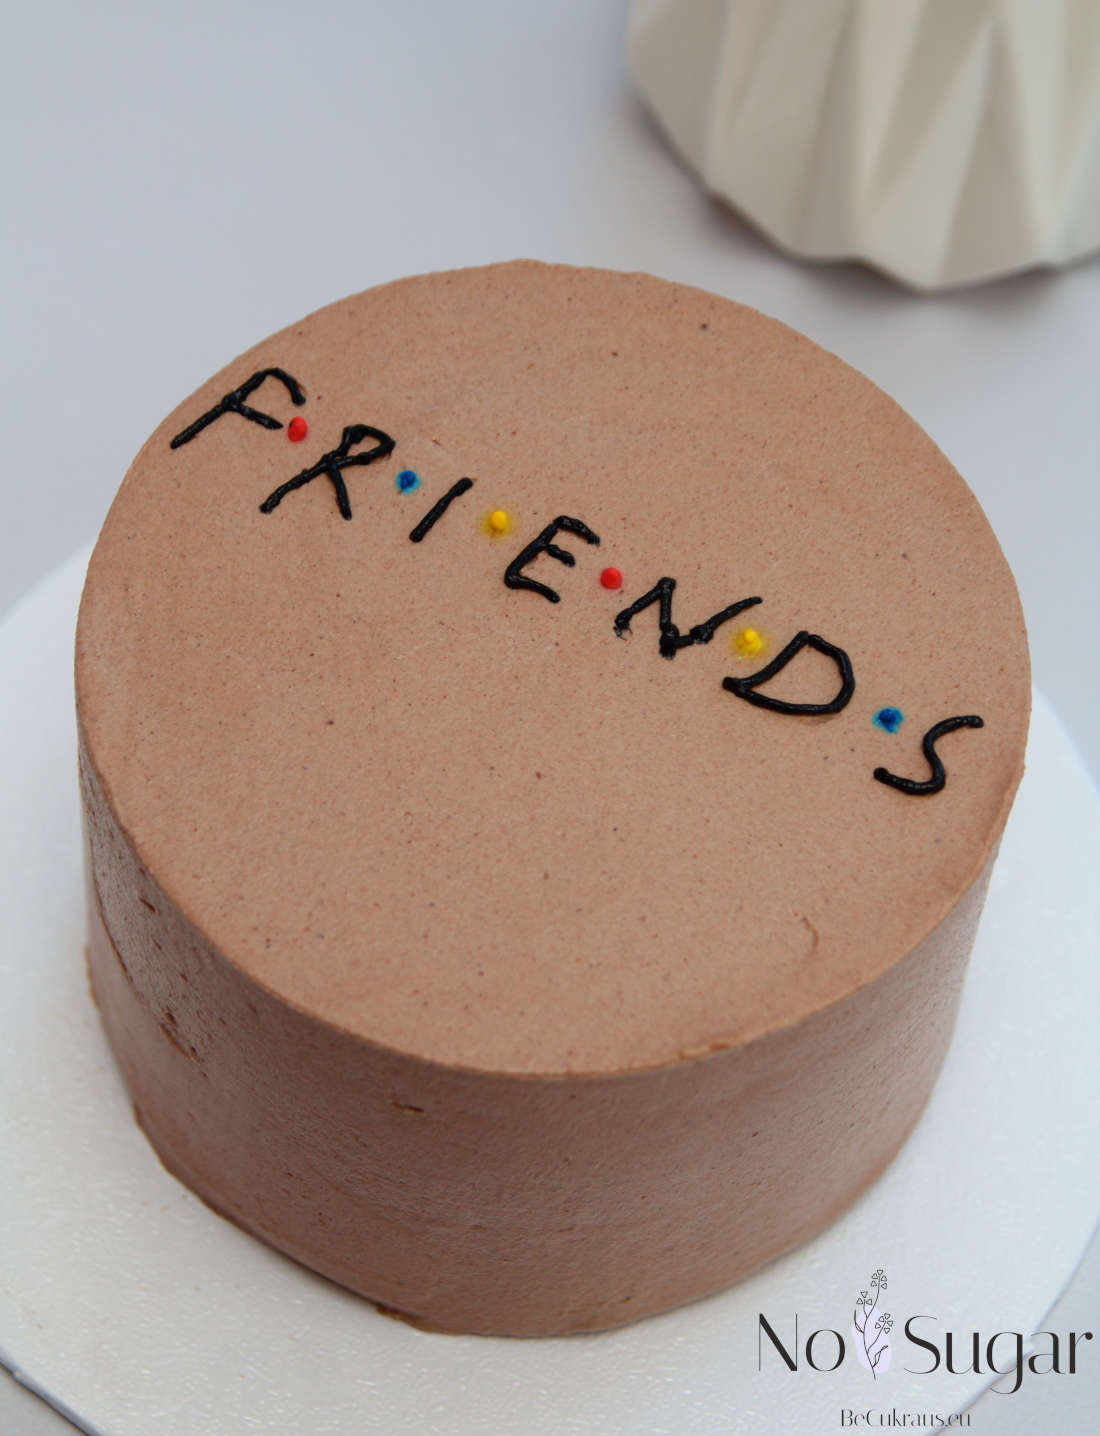 Sugar-free bento cake for a friend